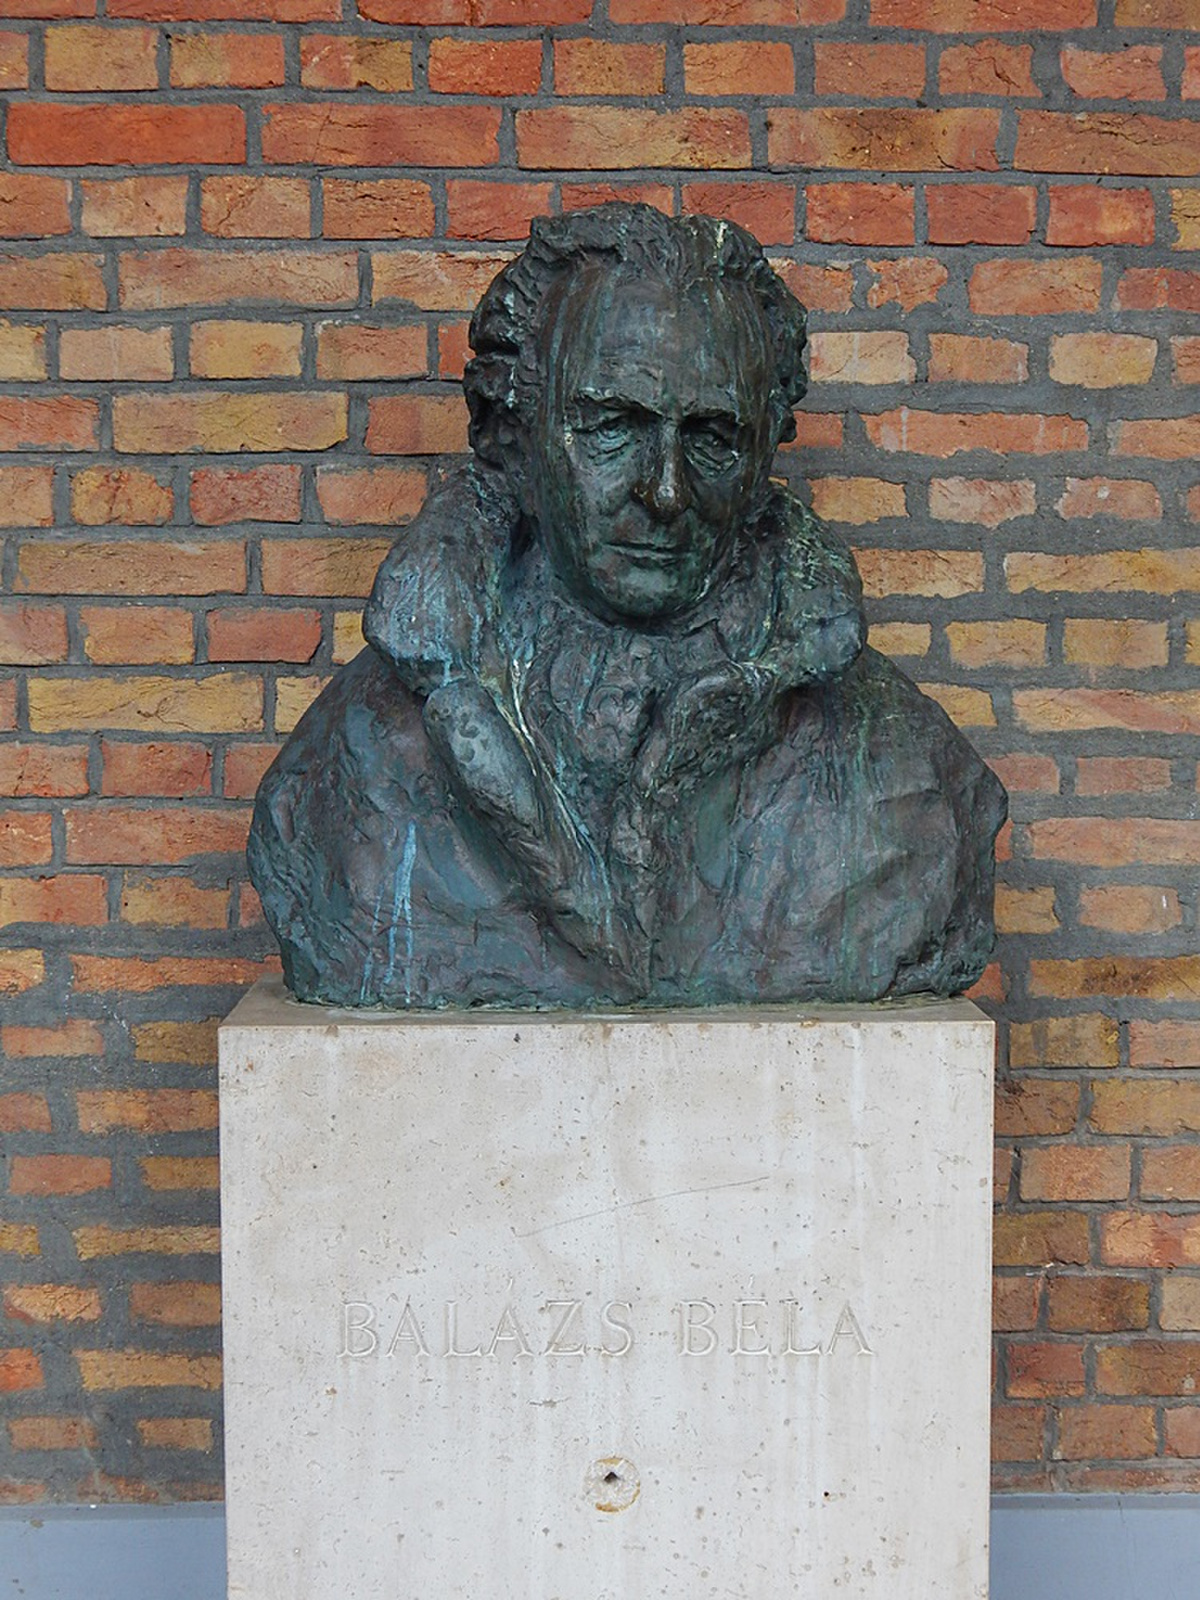 Varga Imre: Balázs Béla (Szeged)